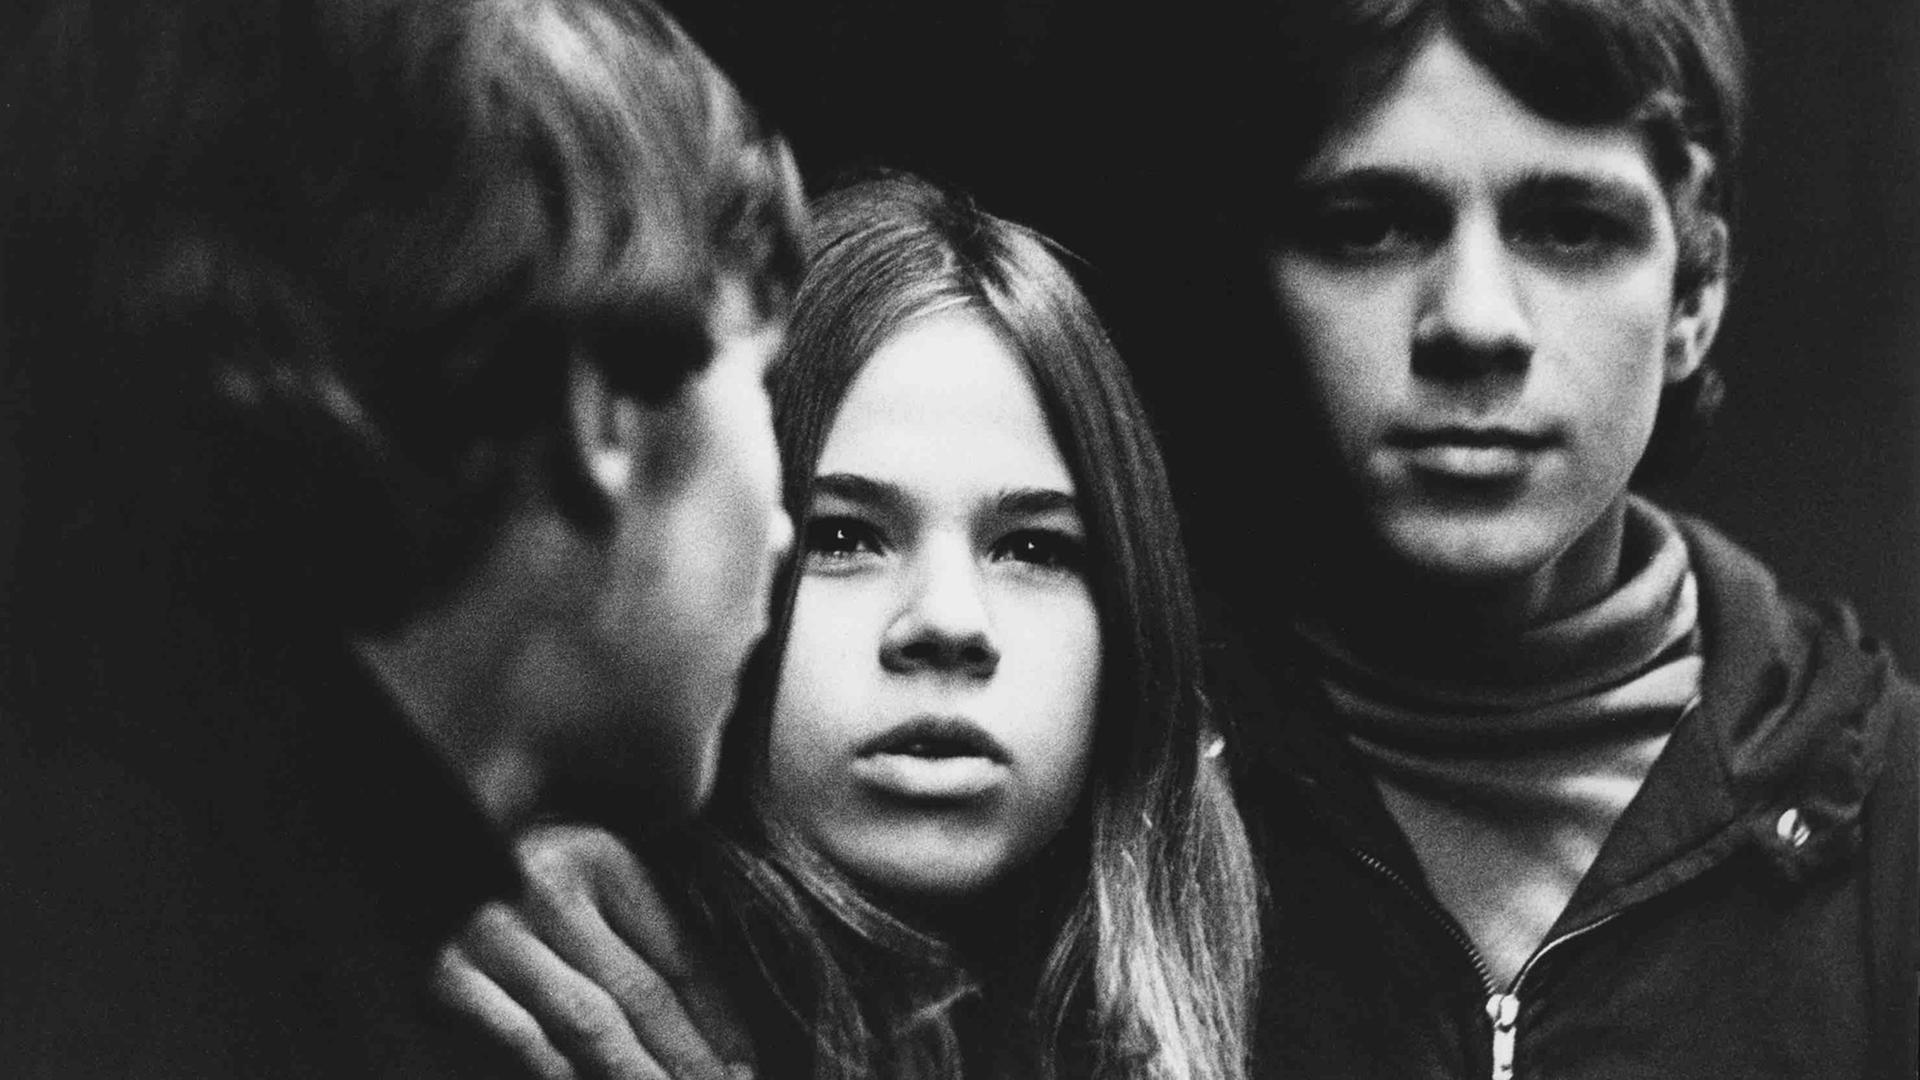 Das Schwarz-Weiß-Foto zeigt die Gesichter von drei jungen Menschen.